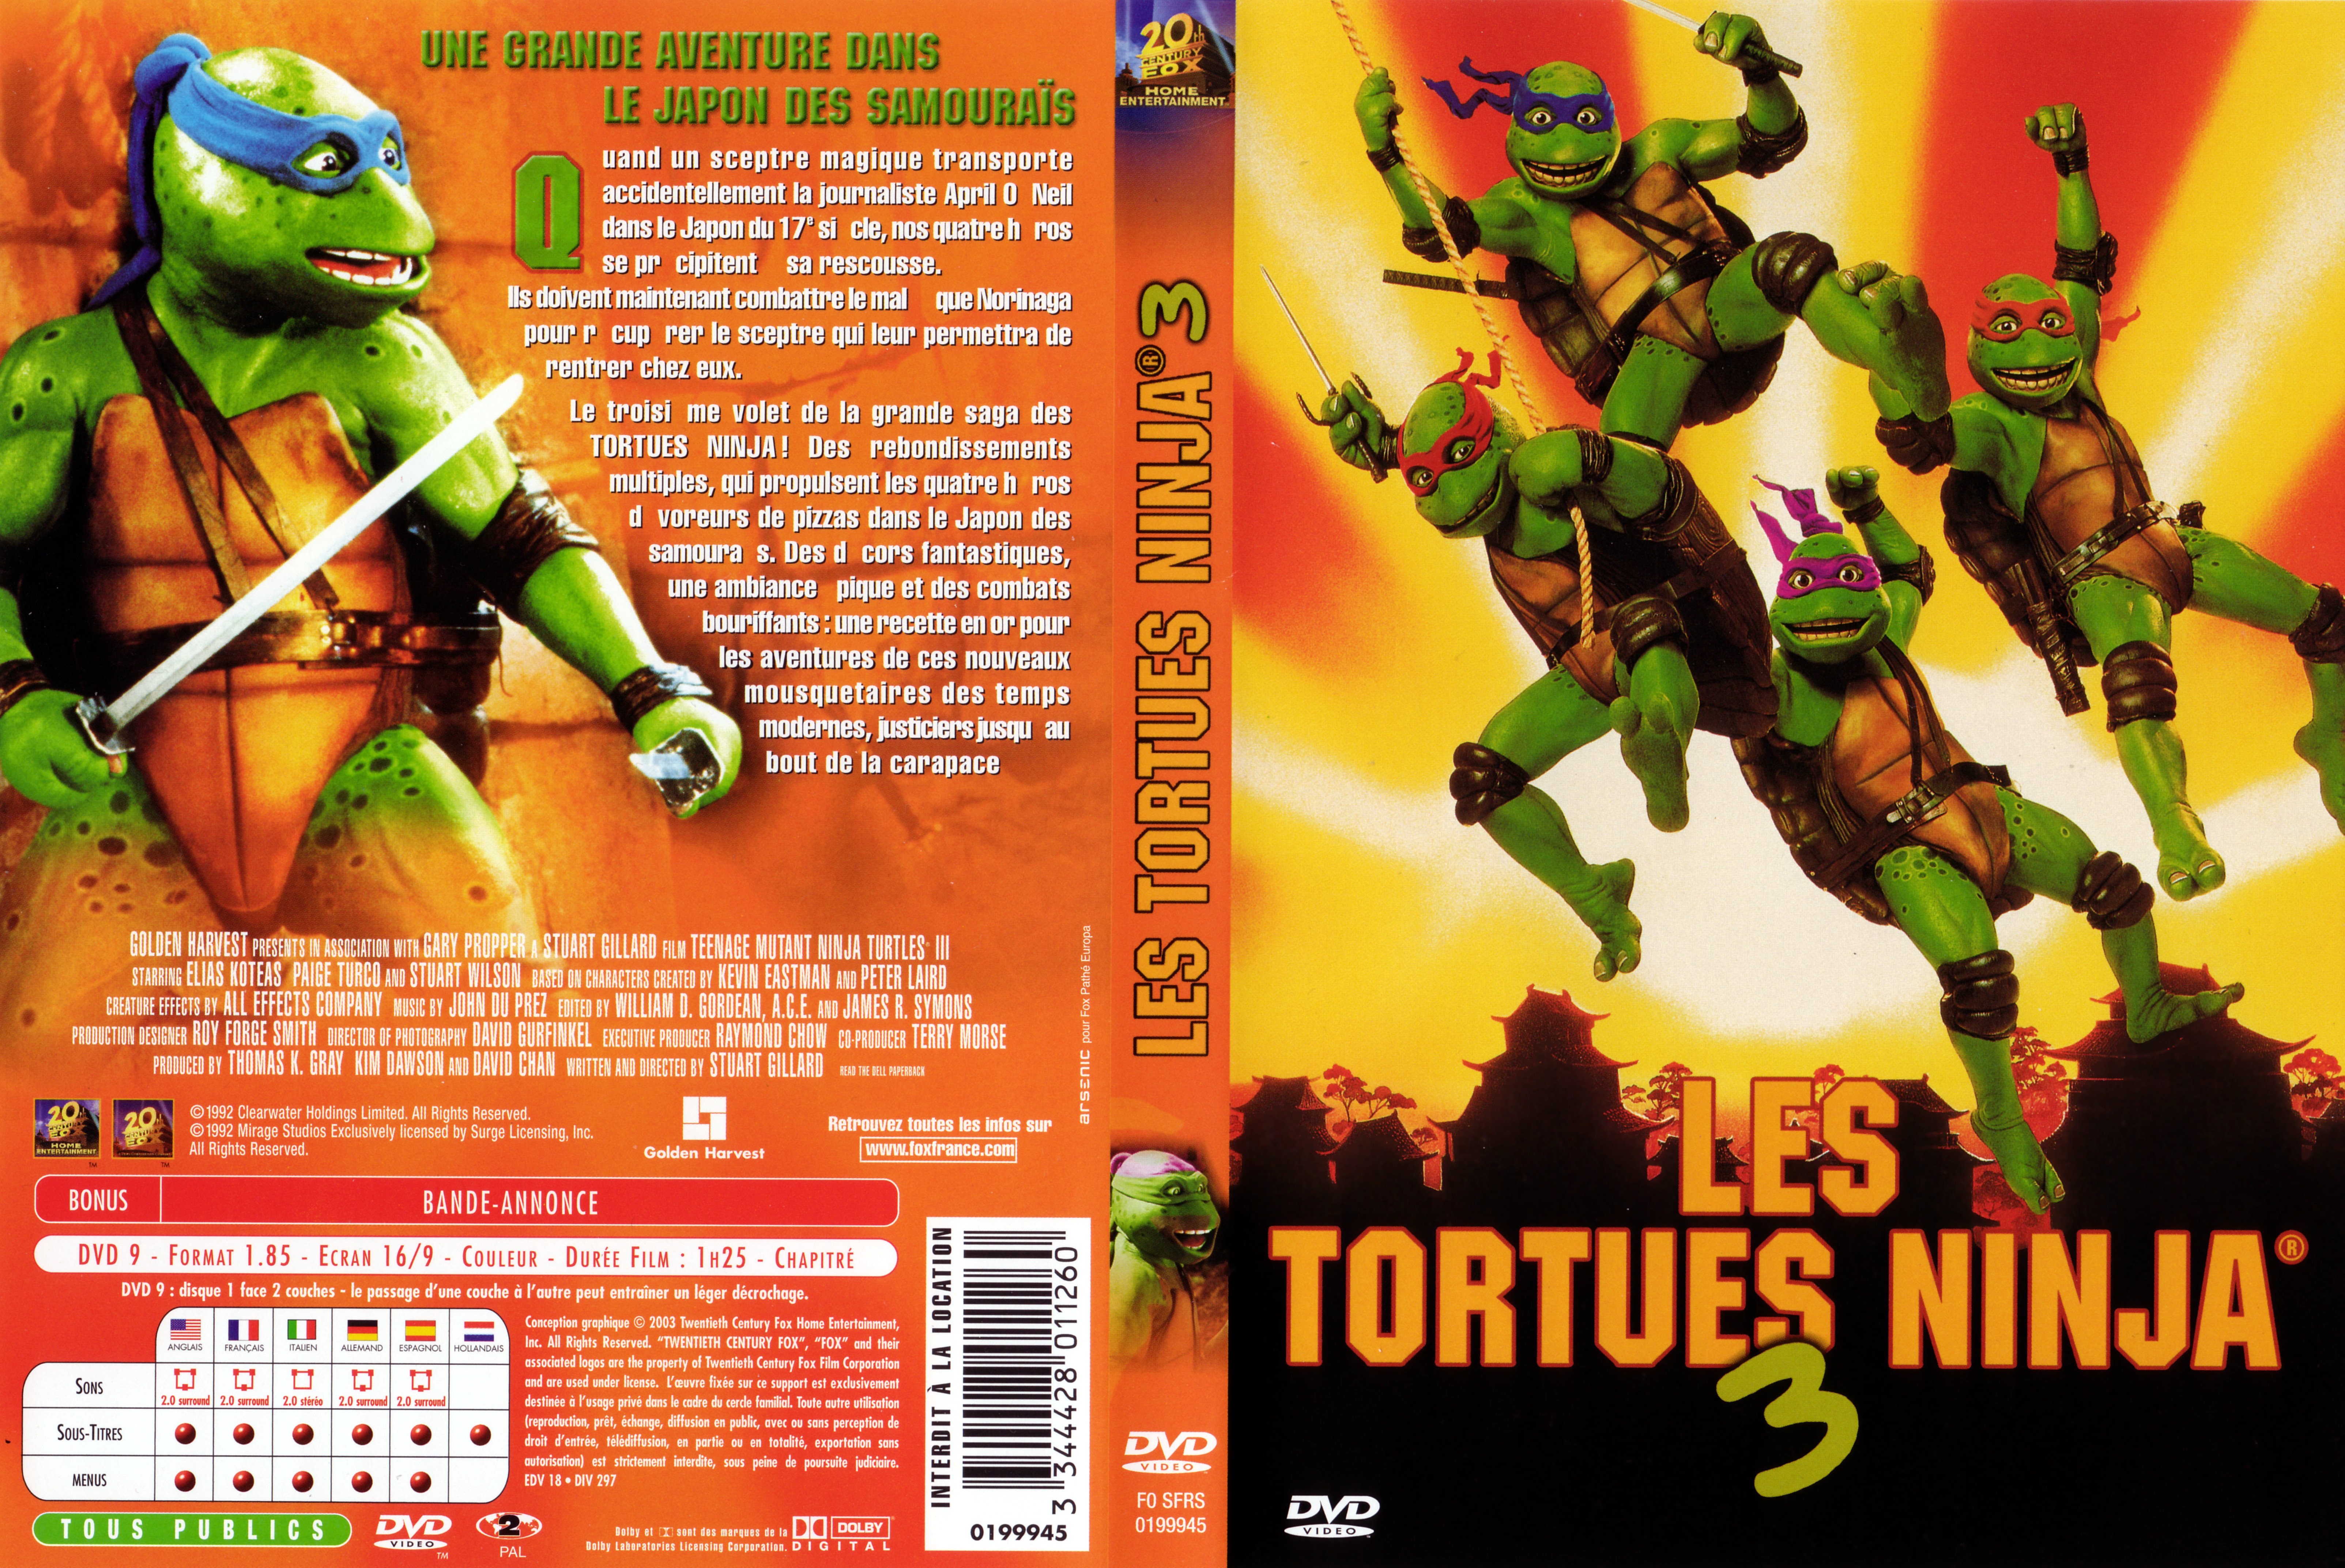 Jaquette DVD Les Tortues Ninja 3 v2